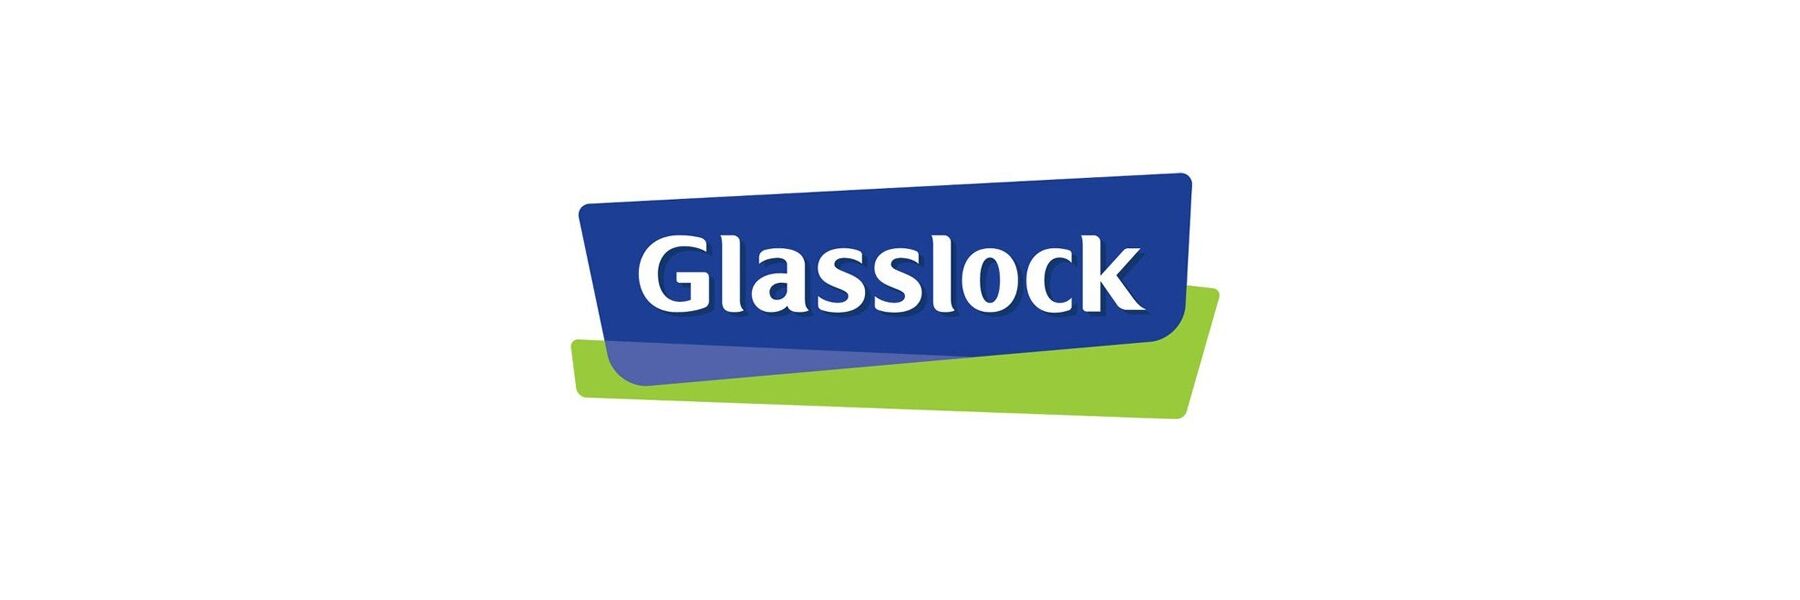 Glasslock hat sich seit dem ersten Glasbehälter...